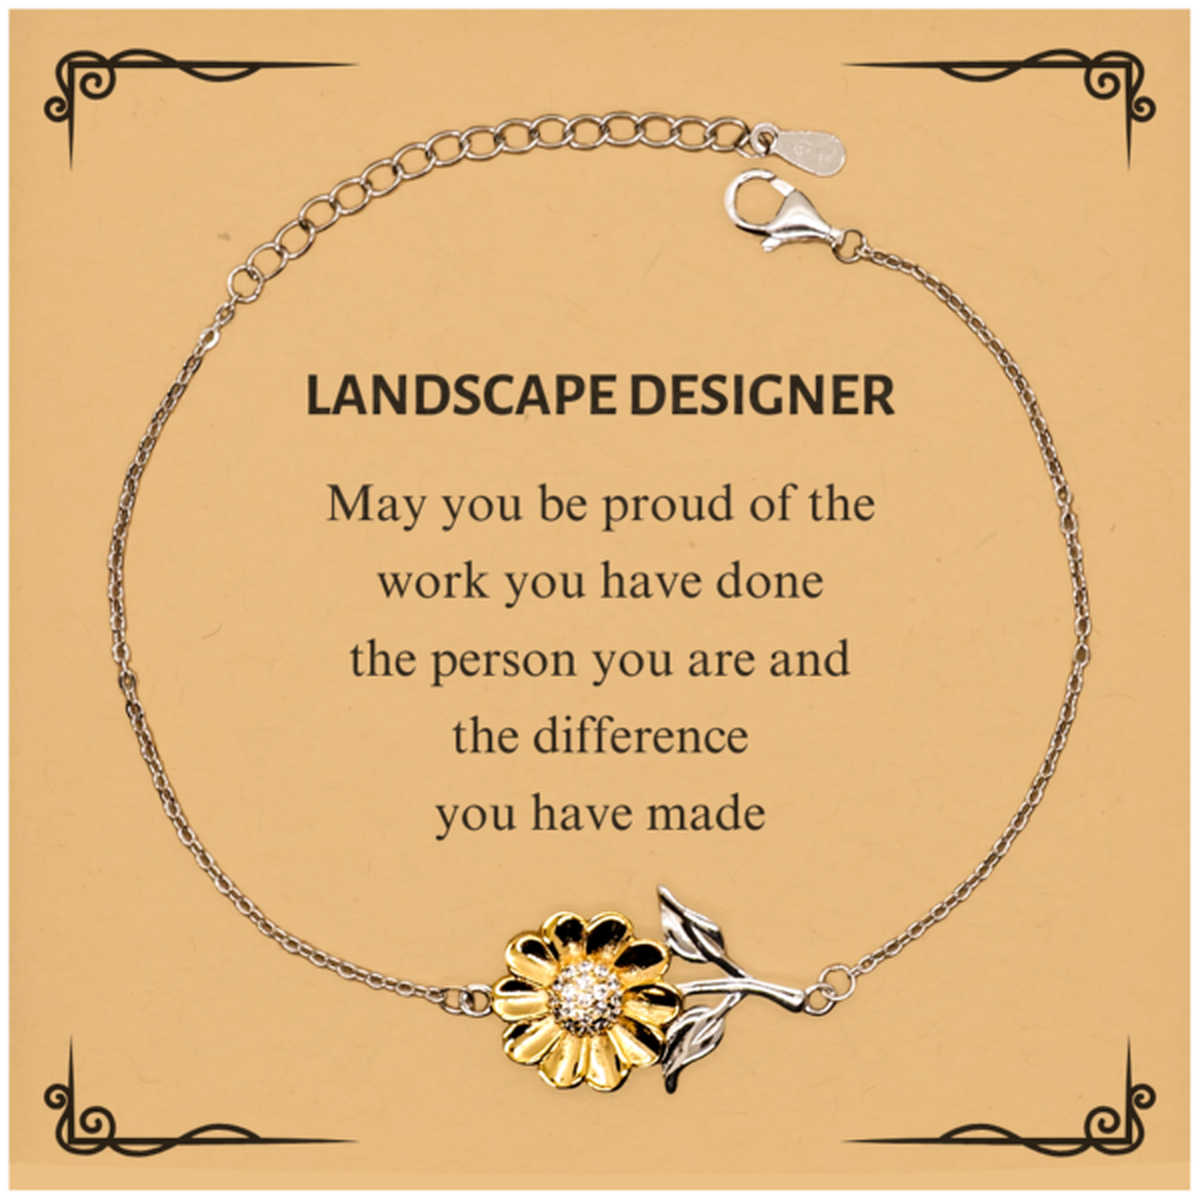 Landscape Designer May you be proud of the work you have done, Retirement Landscape Designer Sunflower Bracelet for Colleague Appreciation Gifts Amazing for Landscape Designer